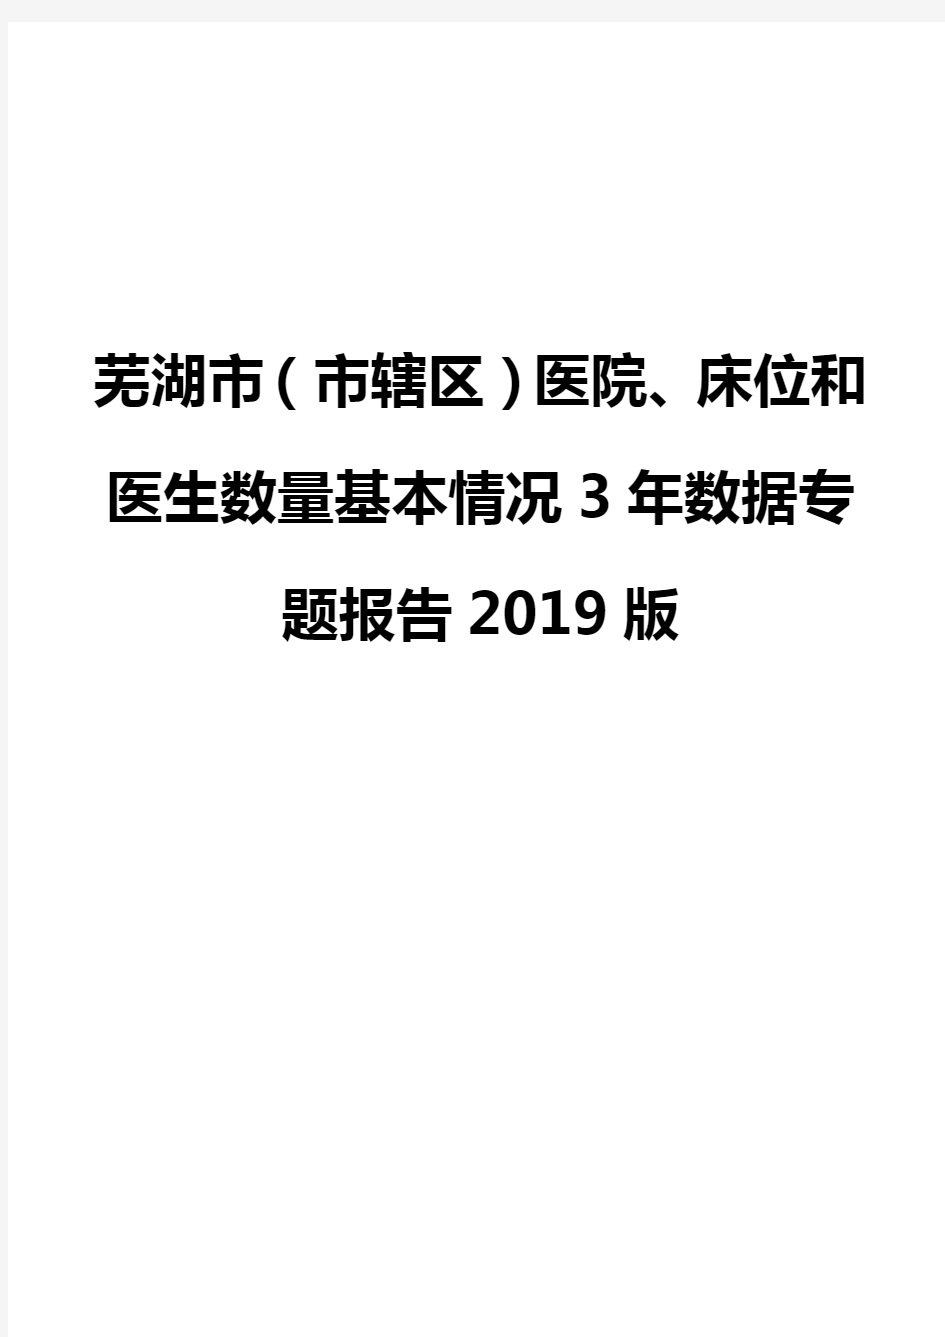 芜湖市(市辖区)医院、床位和医生数量基本情况3年数据专题报告2019版